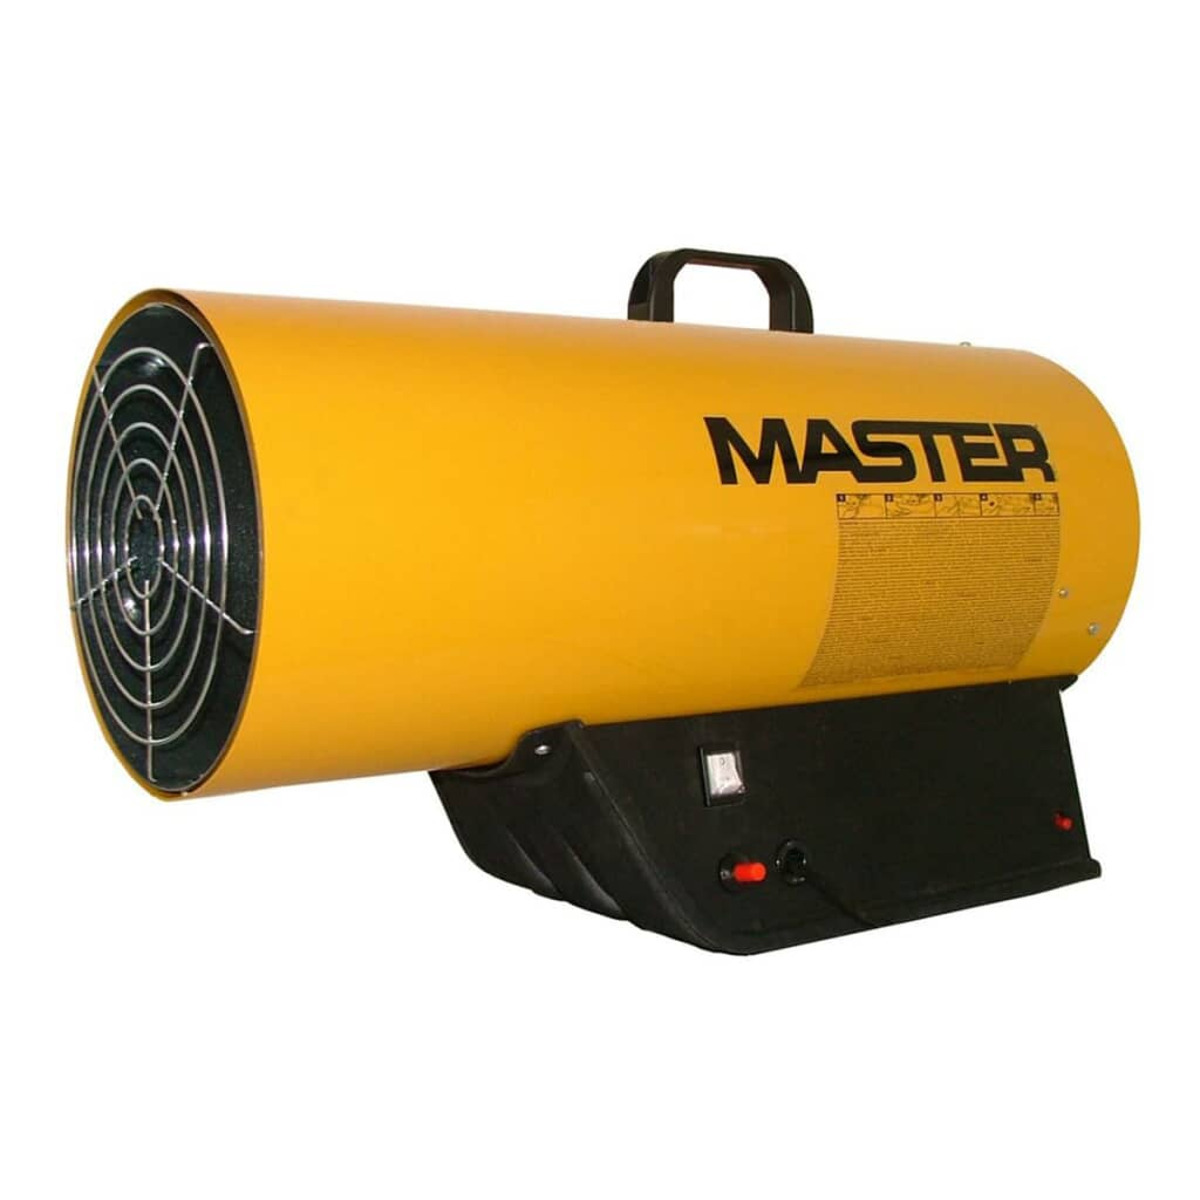 MASTER 403320 Heizstrahler (53000 Watt)